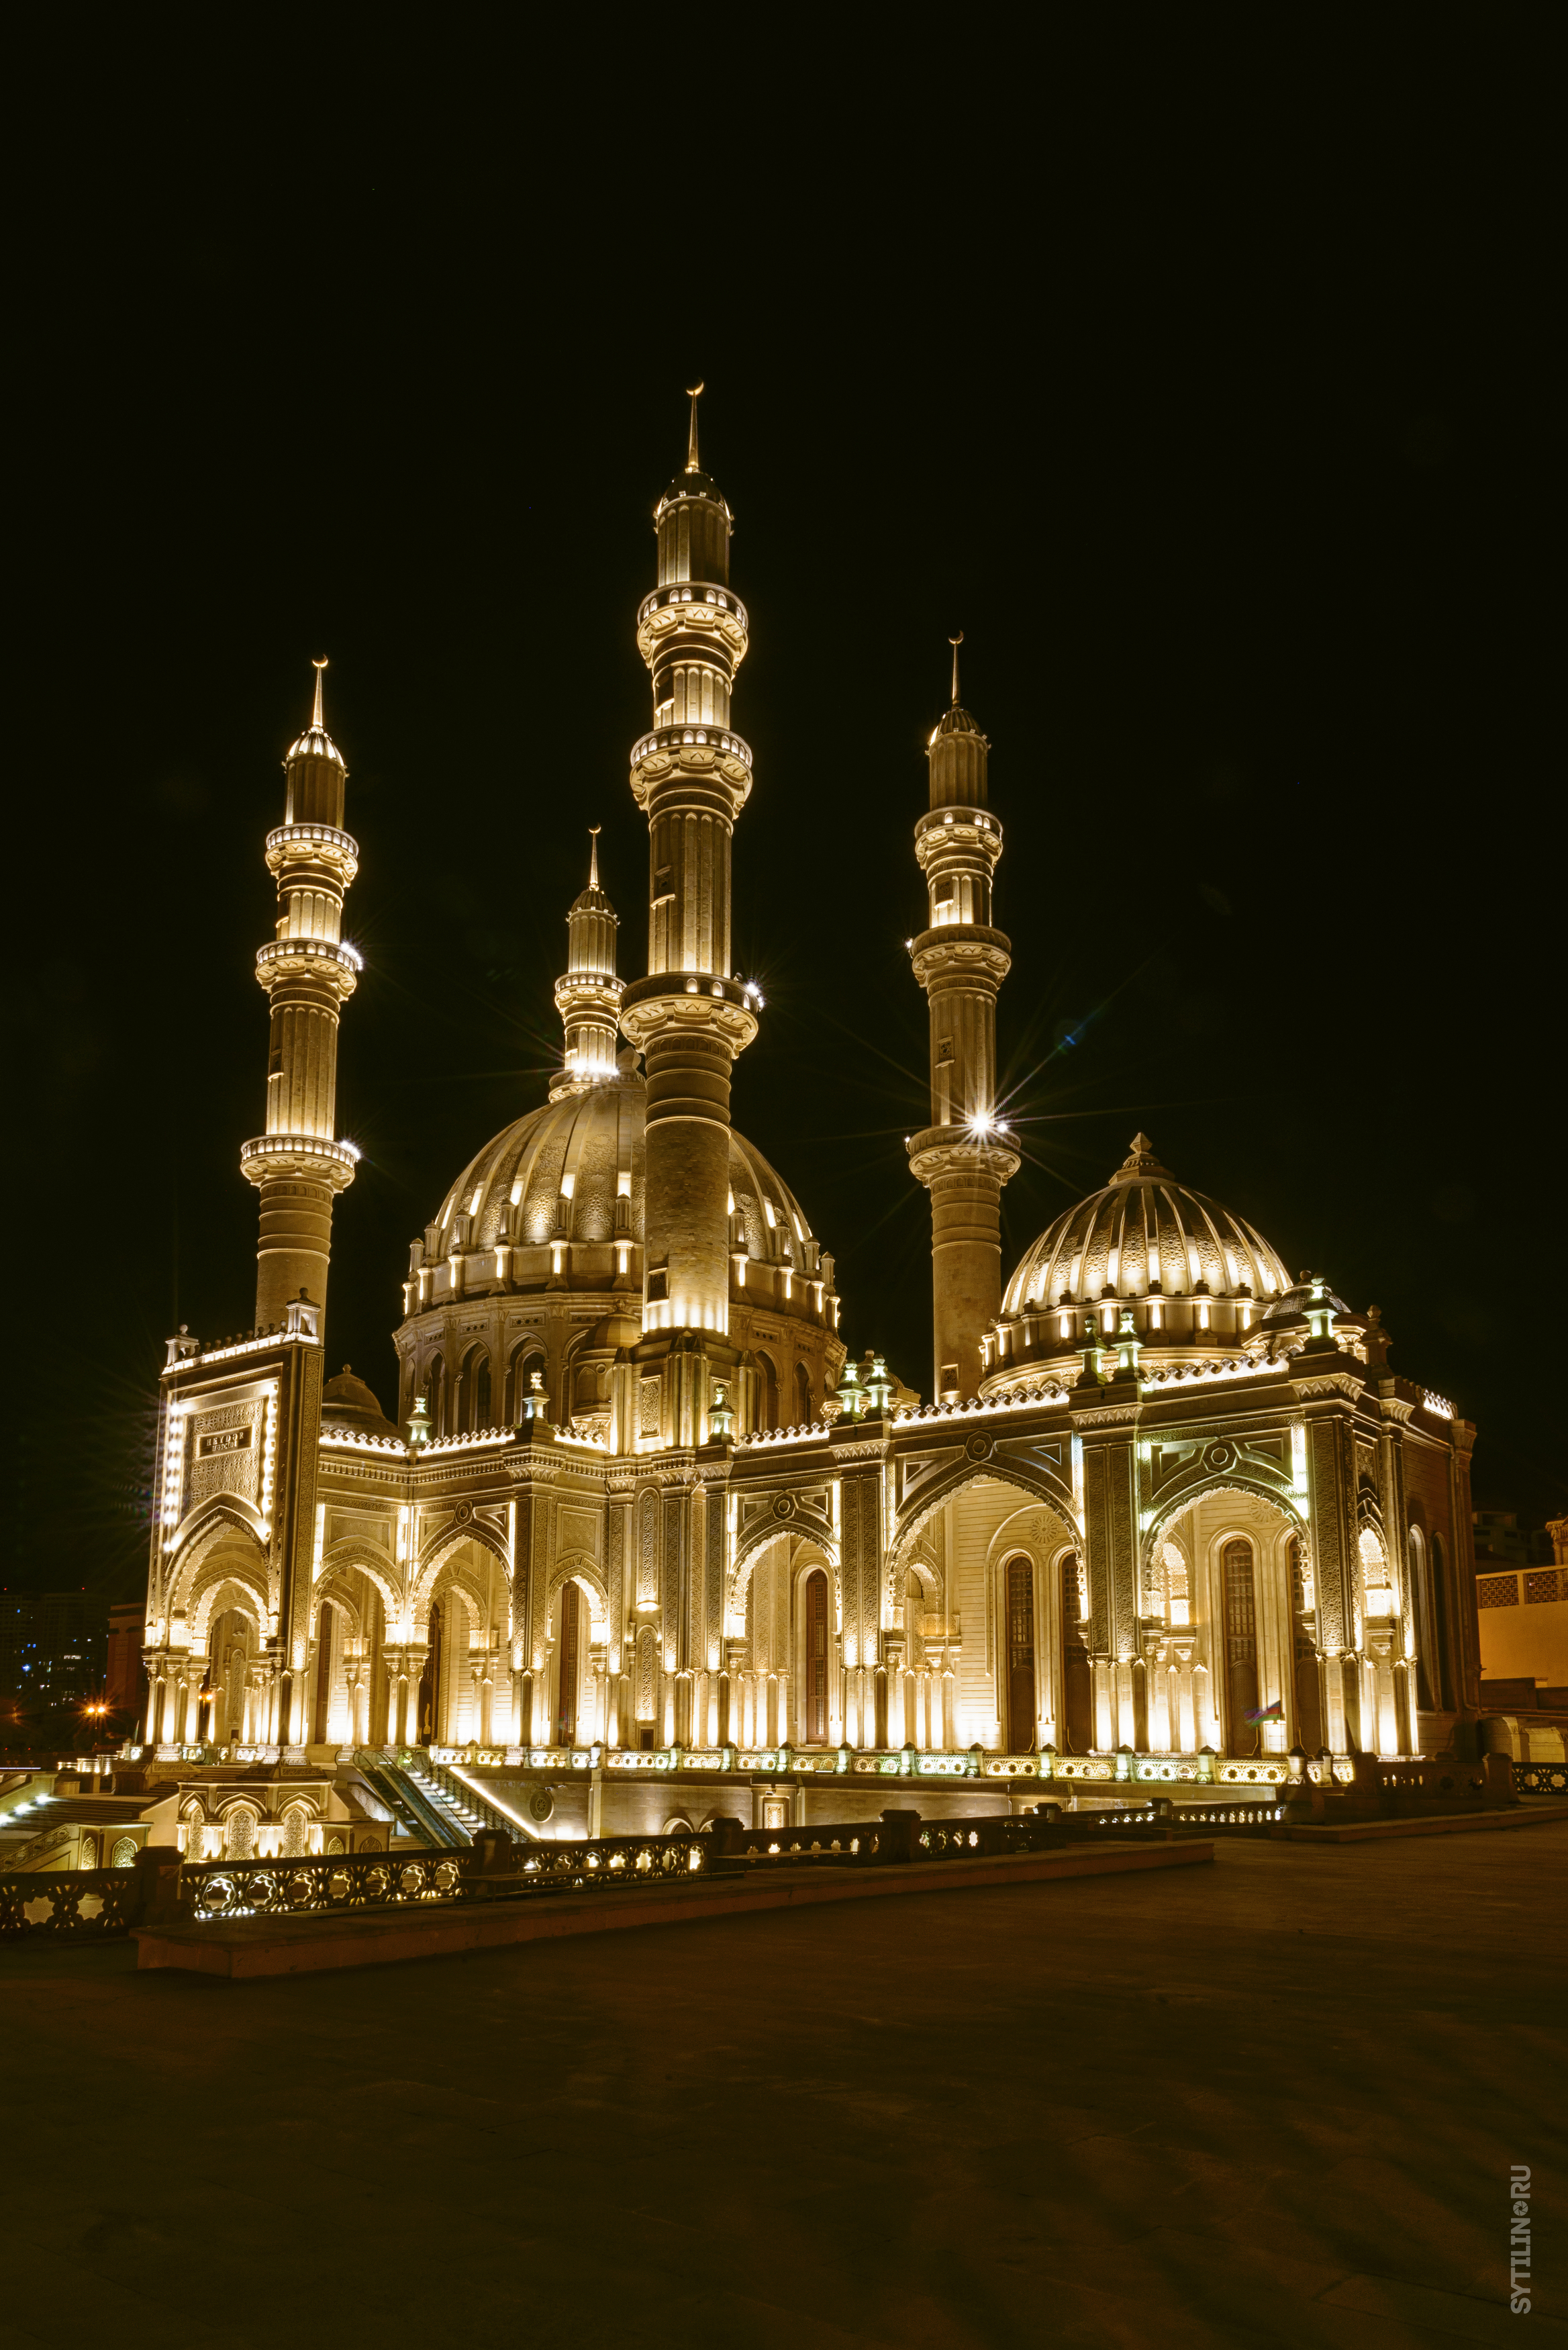 мечеть, гейдара, алиев, баку, азербайджан, ночь, ночной, вид, подсветка, золотой, ислам, святыня, религия, достопримечательность, мусульманский, освещение, архитектура, традиционный, Сытилин Павел